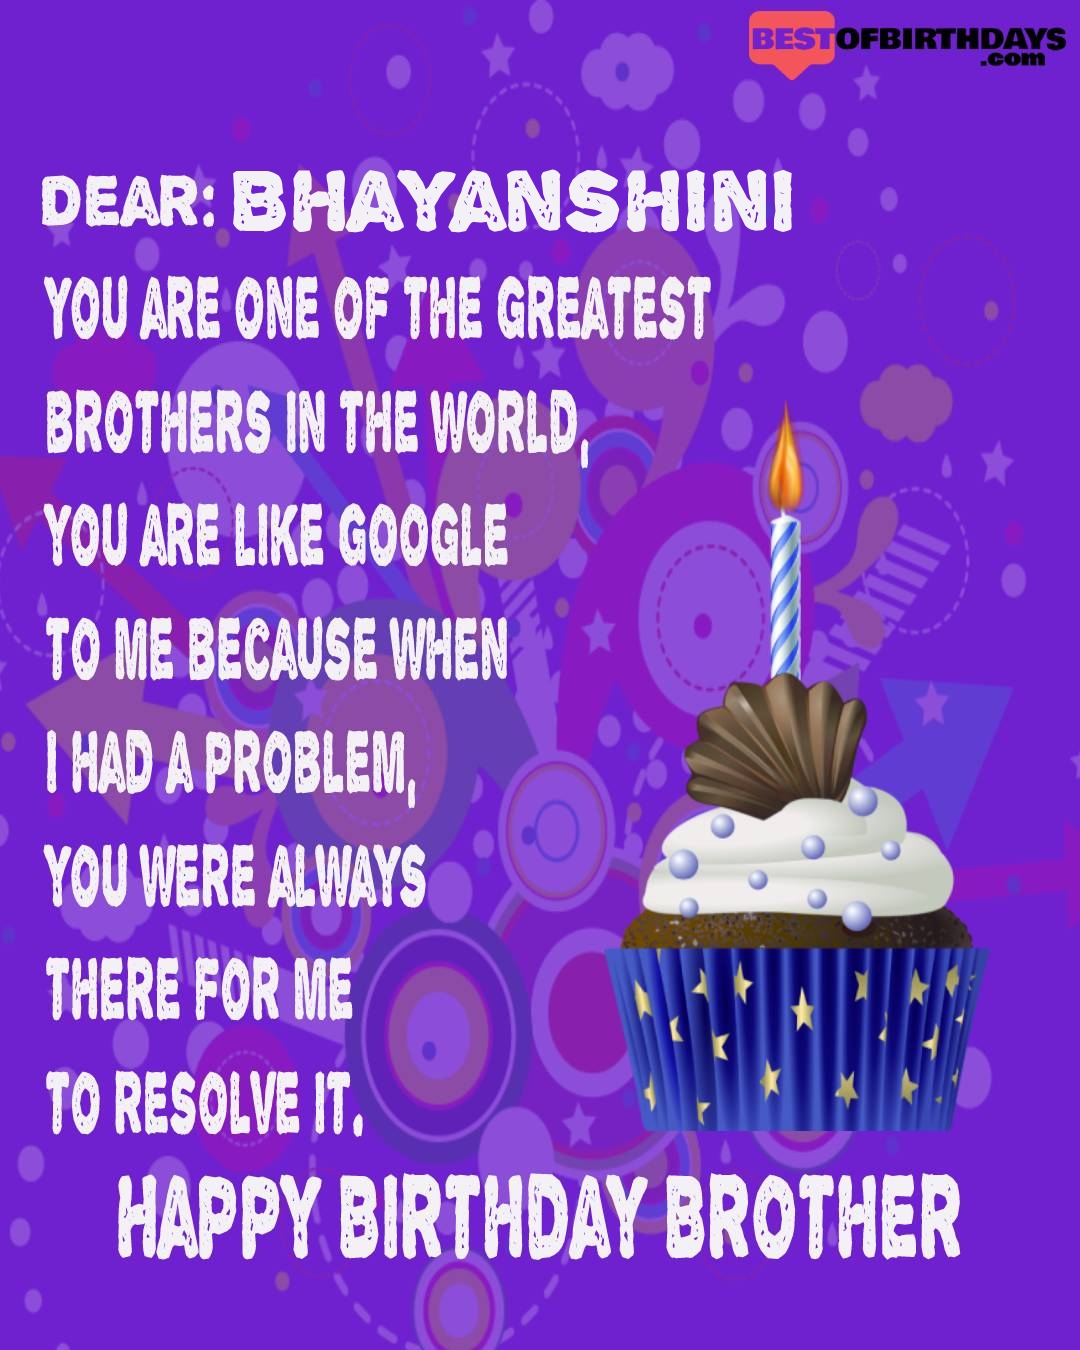 Happy birthday bhayanshini bhai brother bro